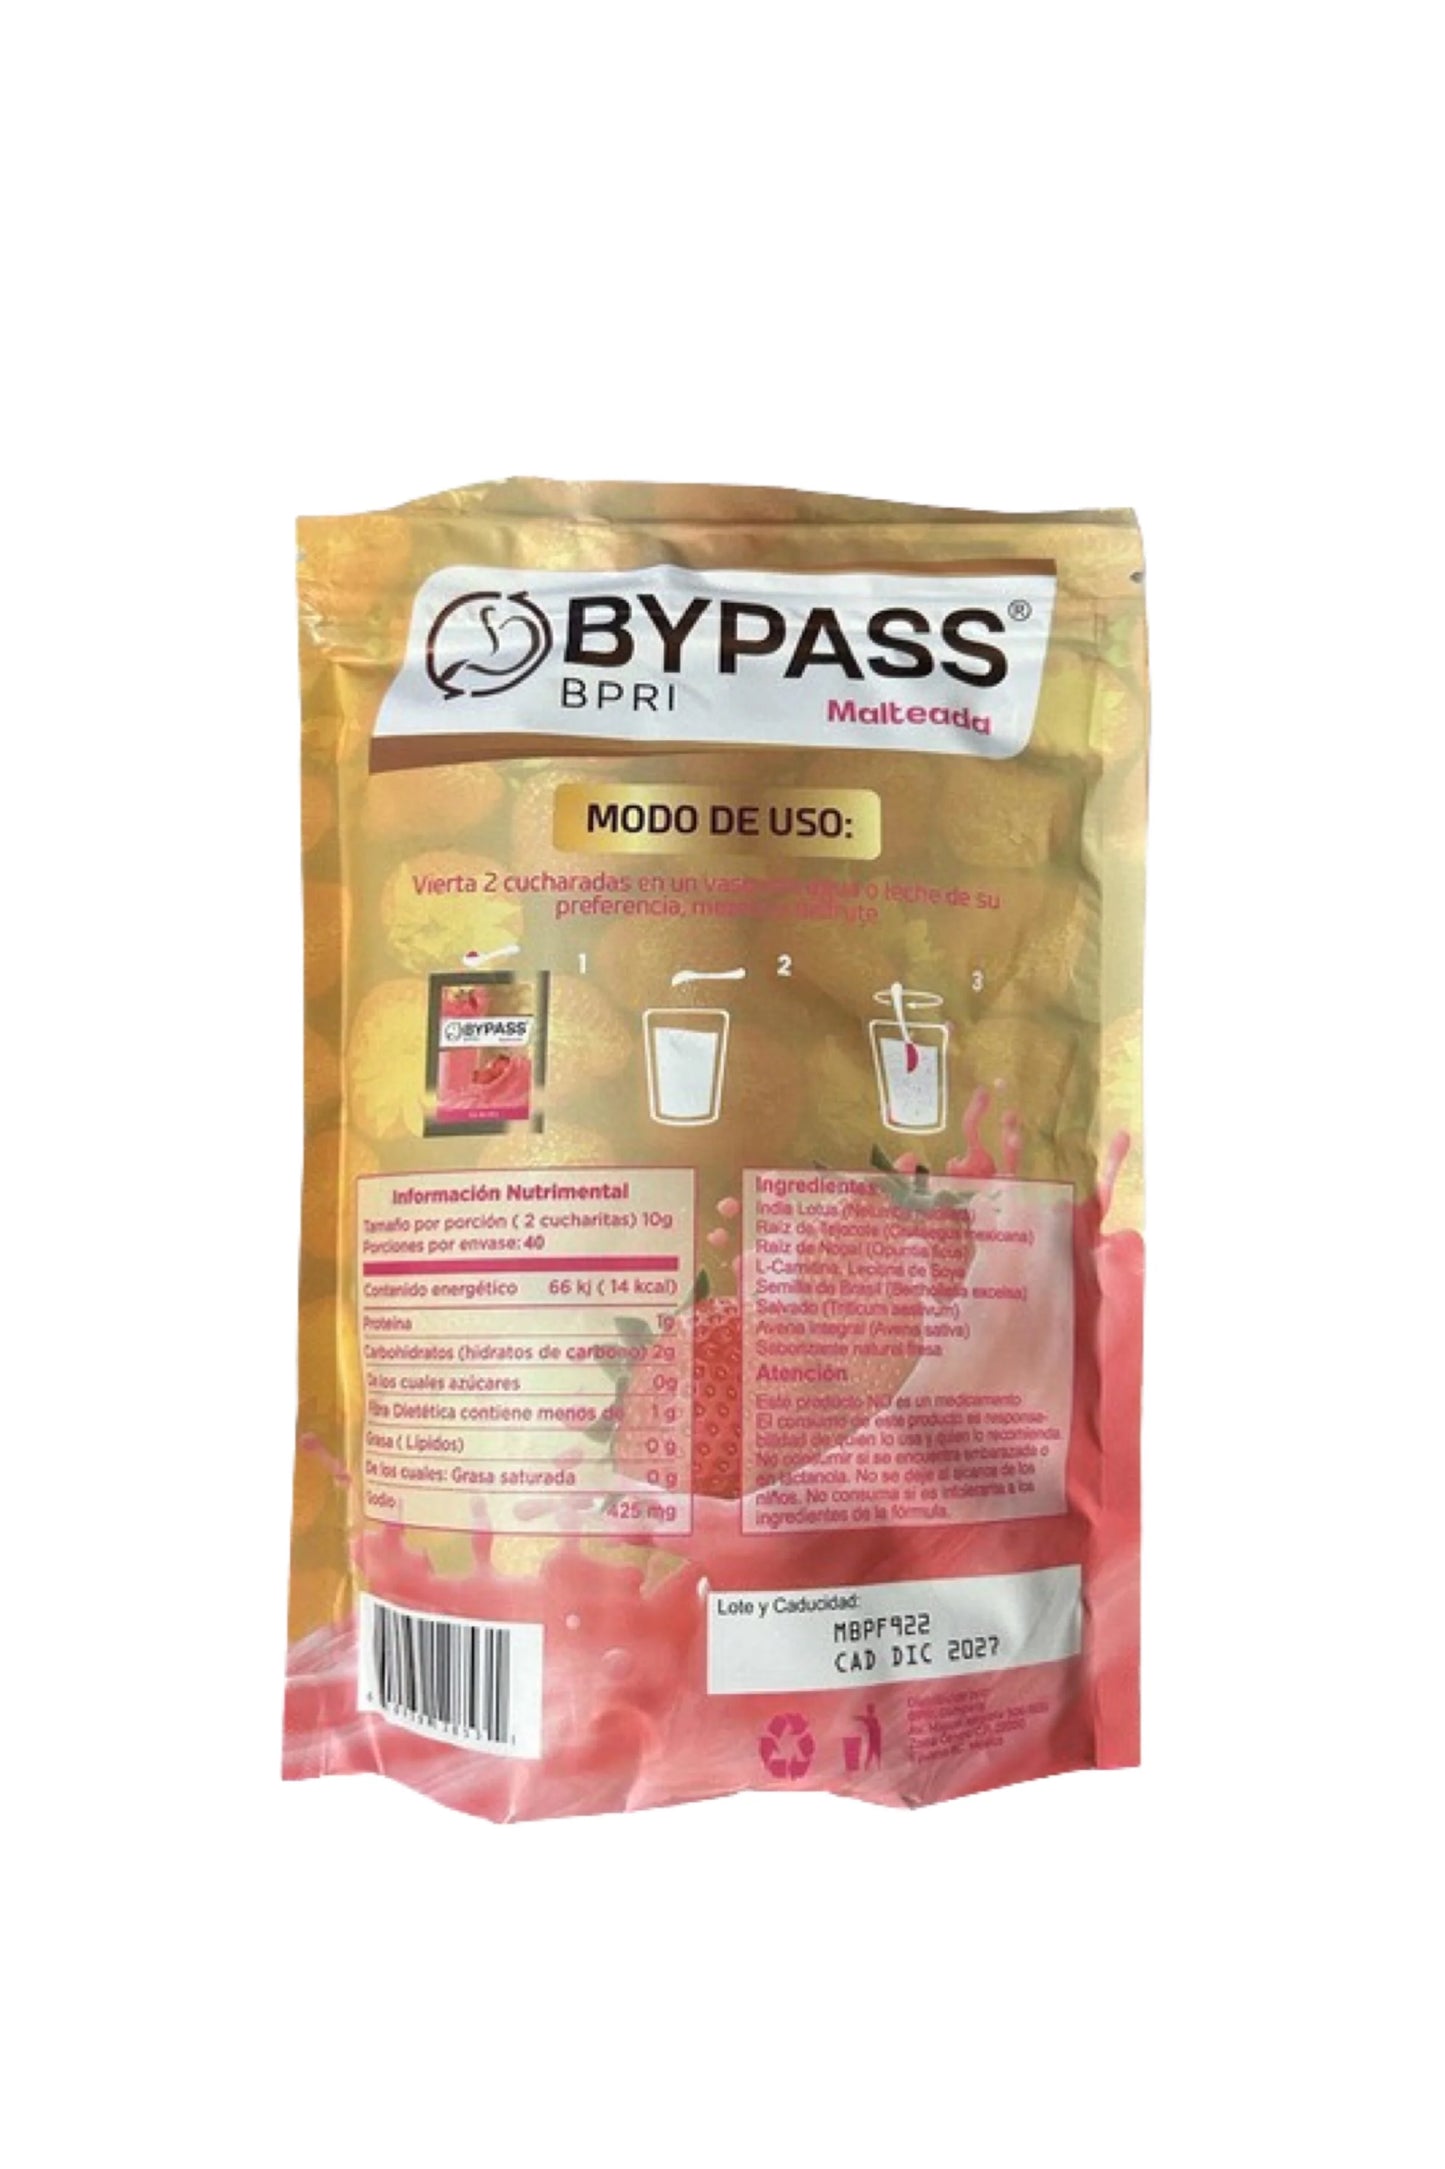 ByPass Bpri shake 400g sabor fresa